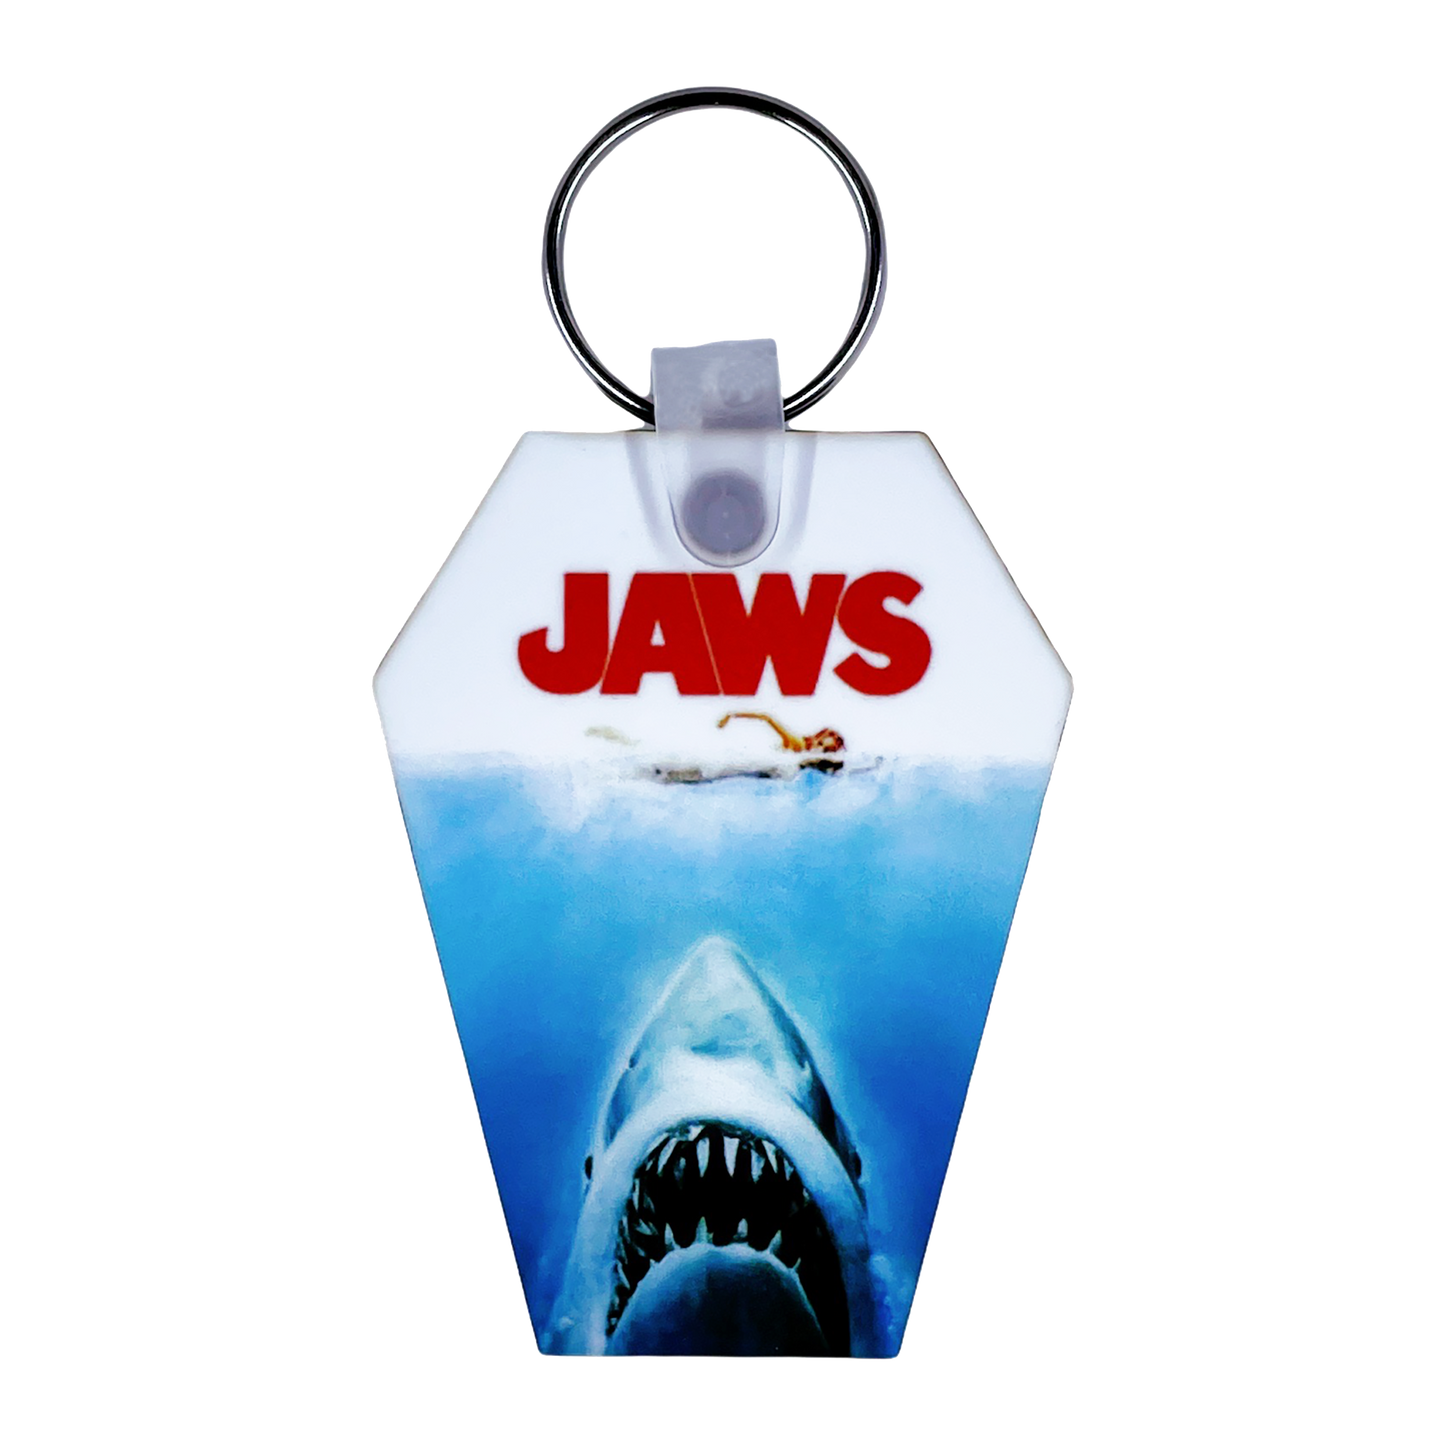 Jaws Coffin Keychain